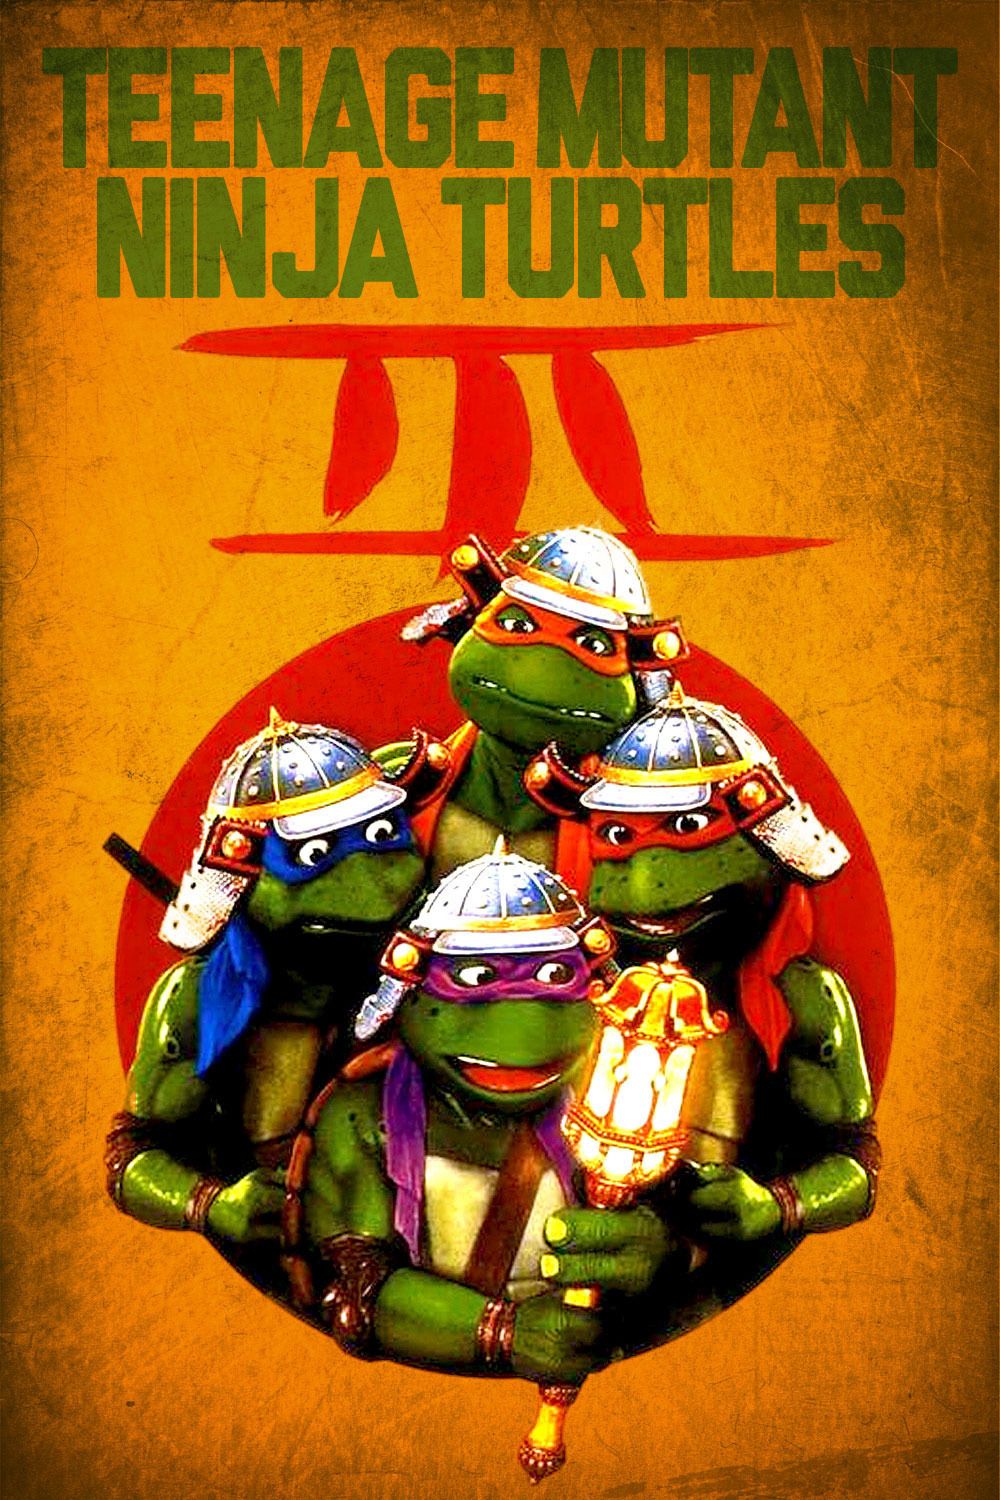 Teenage Mutant Ninja Turtles III Main Poster